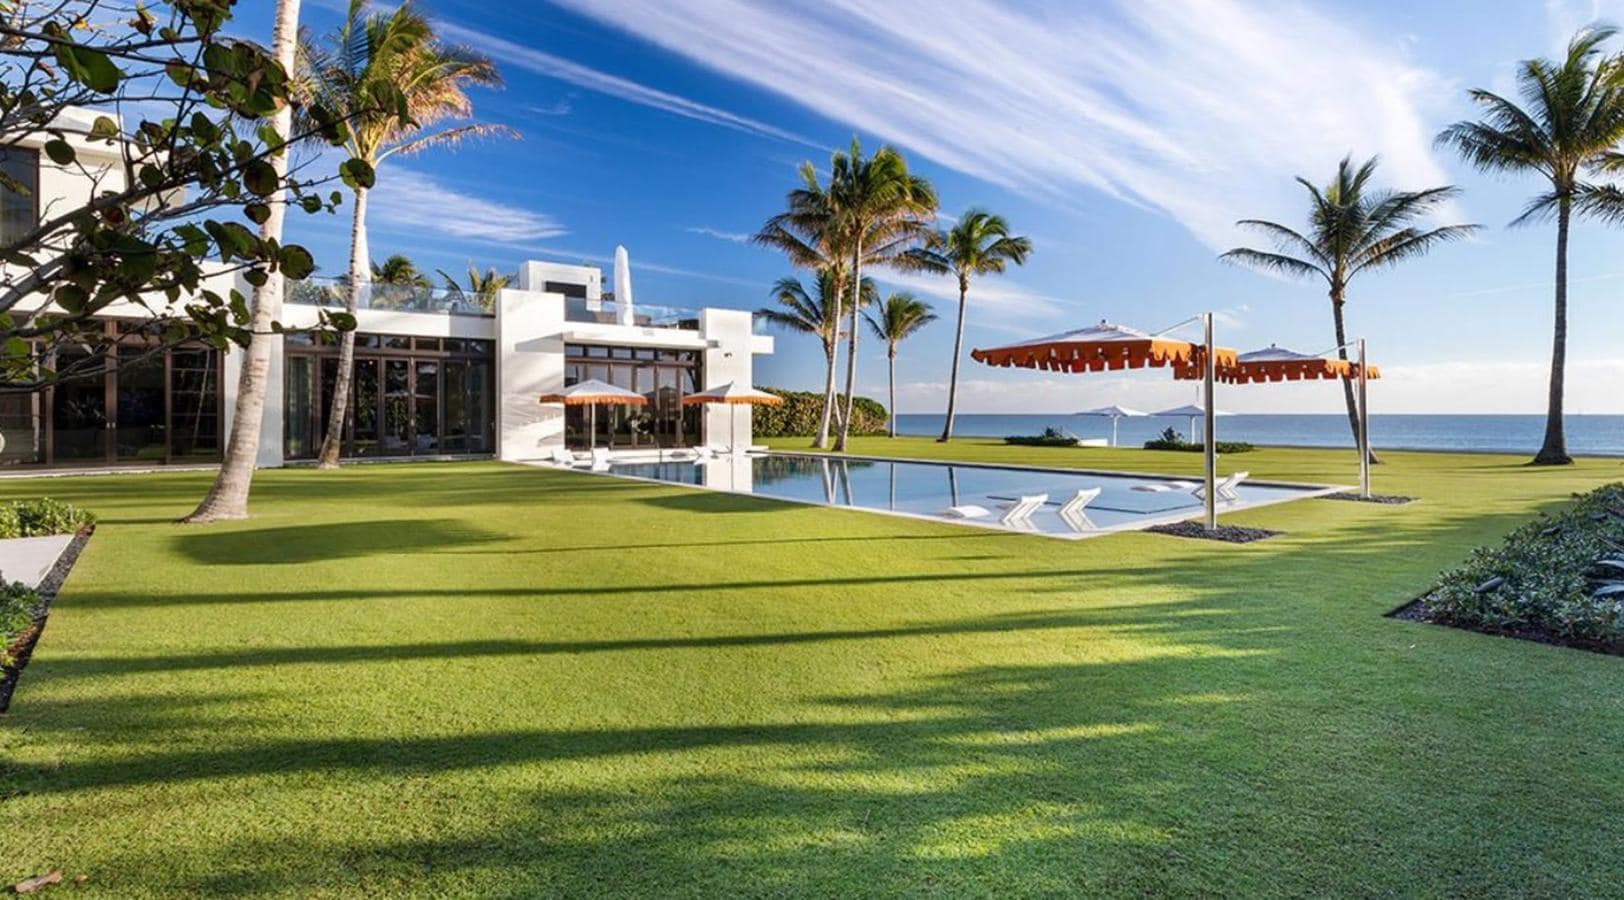 Un magnate ruso paga en efectivo 140 millones por la mansión más cara de Florida